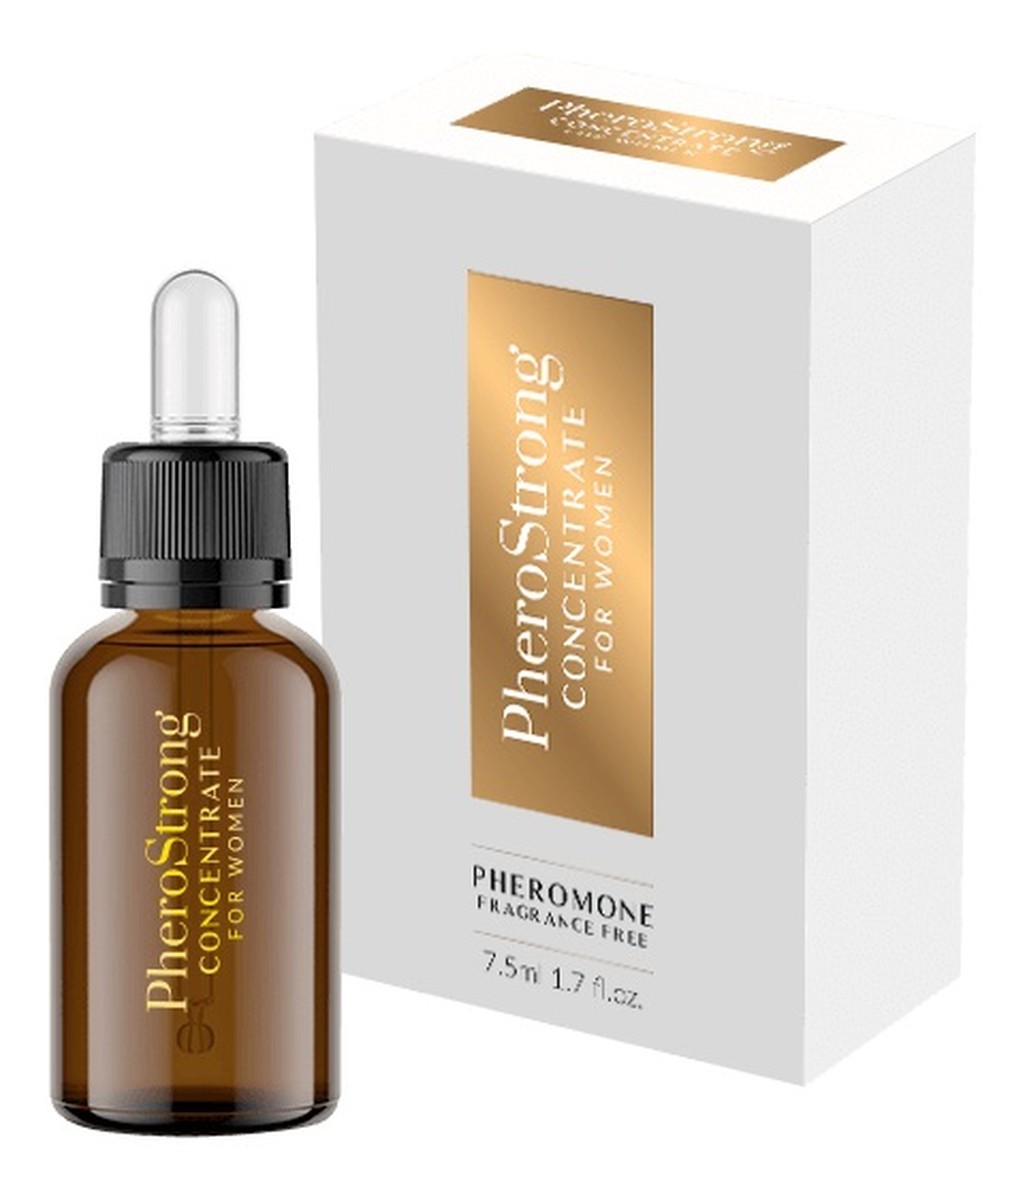 Pheromone concentrate for women bezzapachowy koncentrat feromonów dla kobiet 7,5 ml